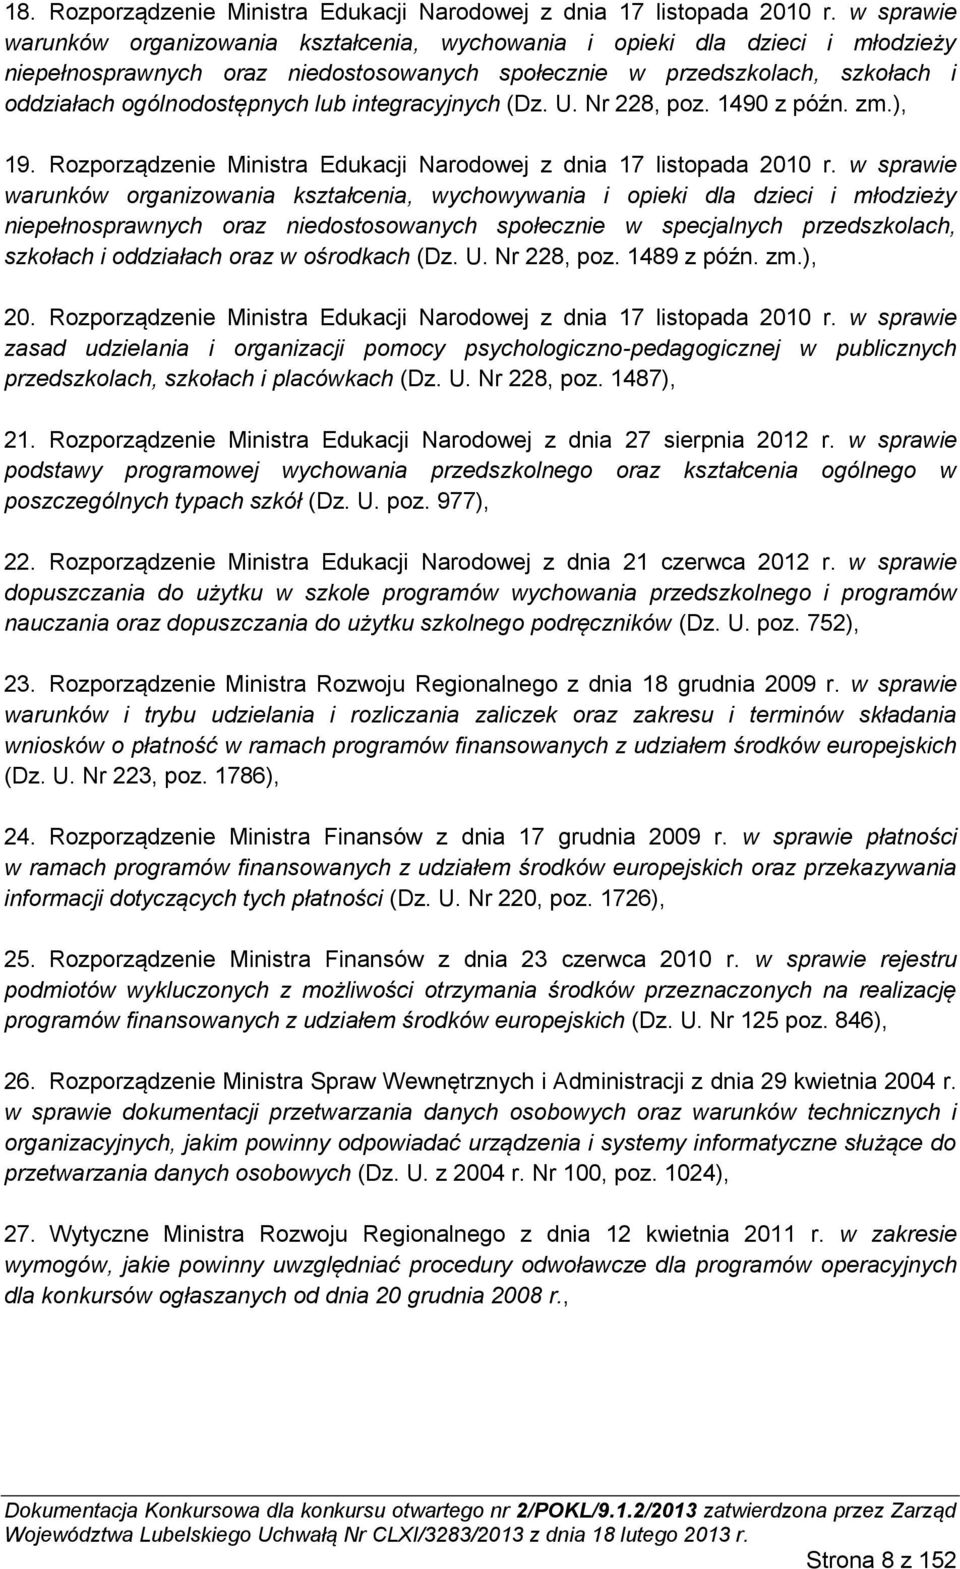 integracyjnych (Dz. U. Nr 228, poz. 1490 z późn. zm.), 19. Rozporządzenie Ministra Edukacji Narodowej z dnia 17 listopada 2010 r.